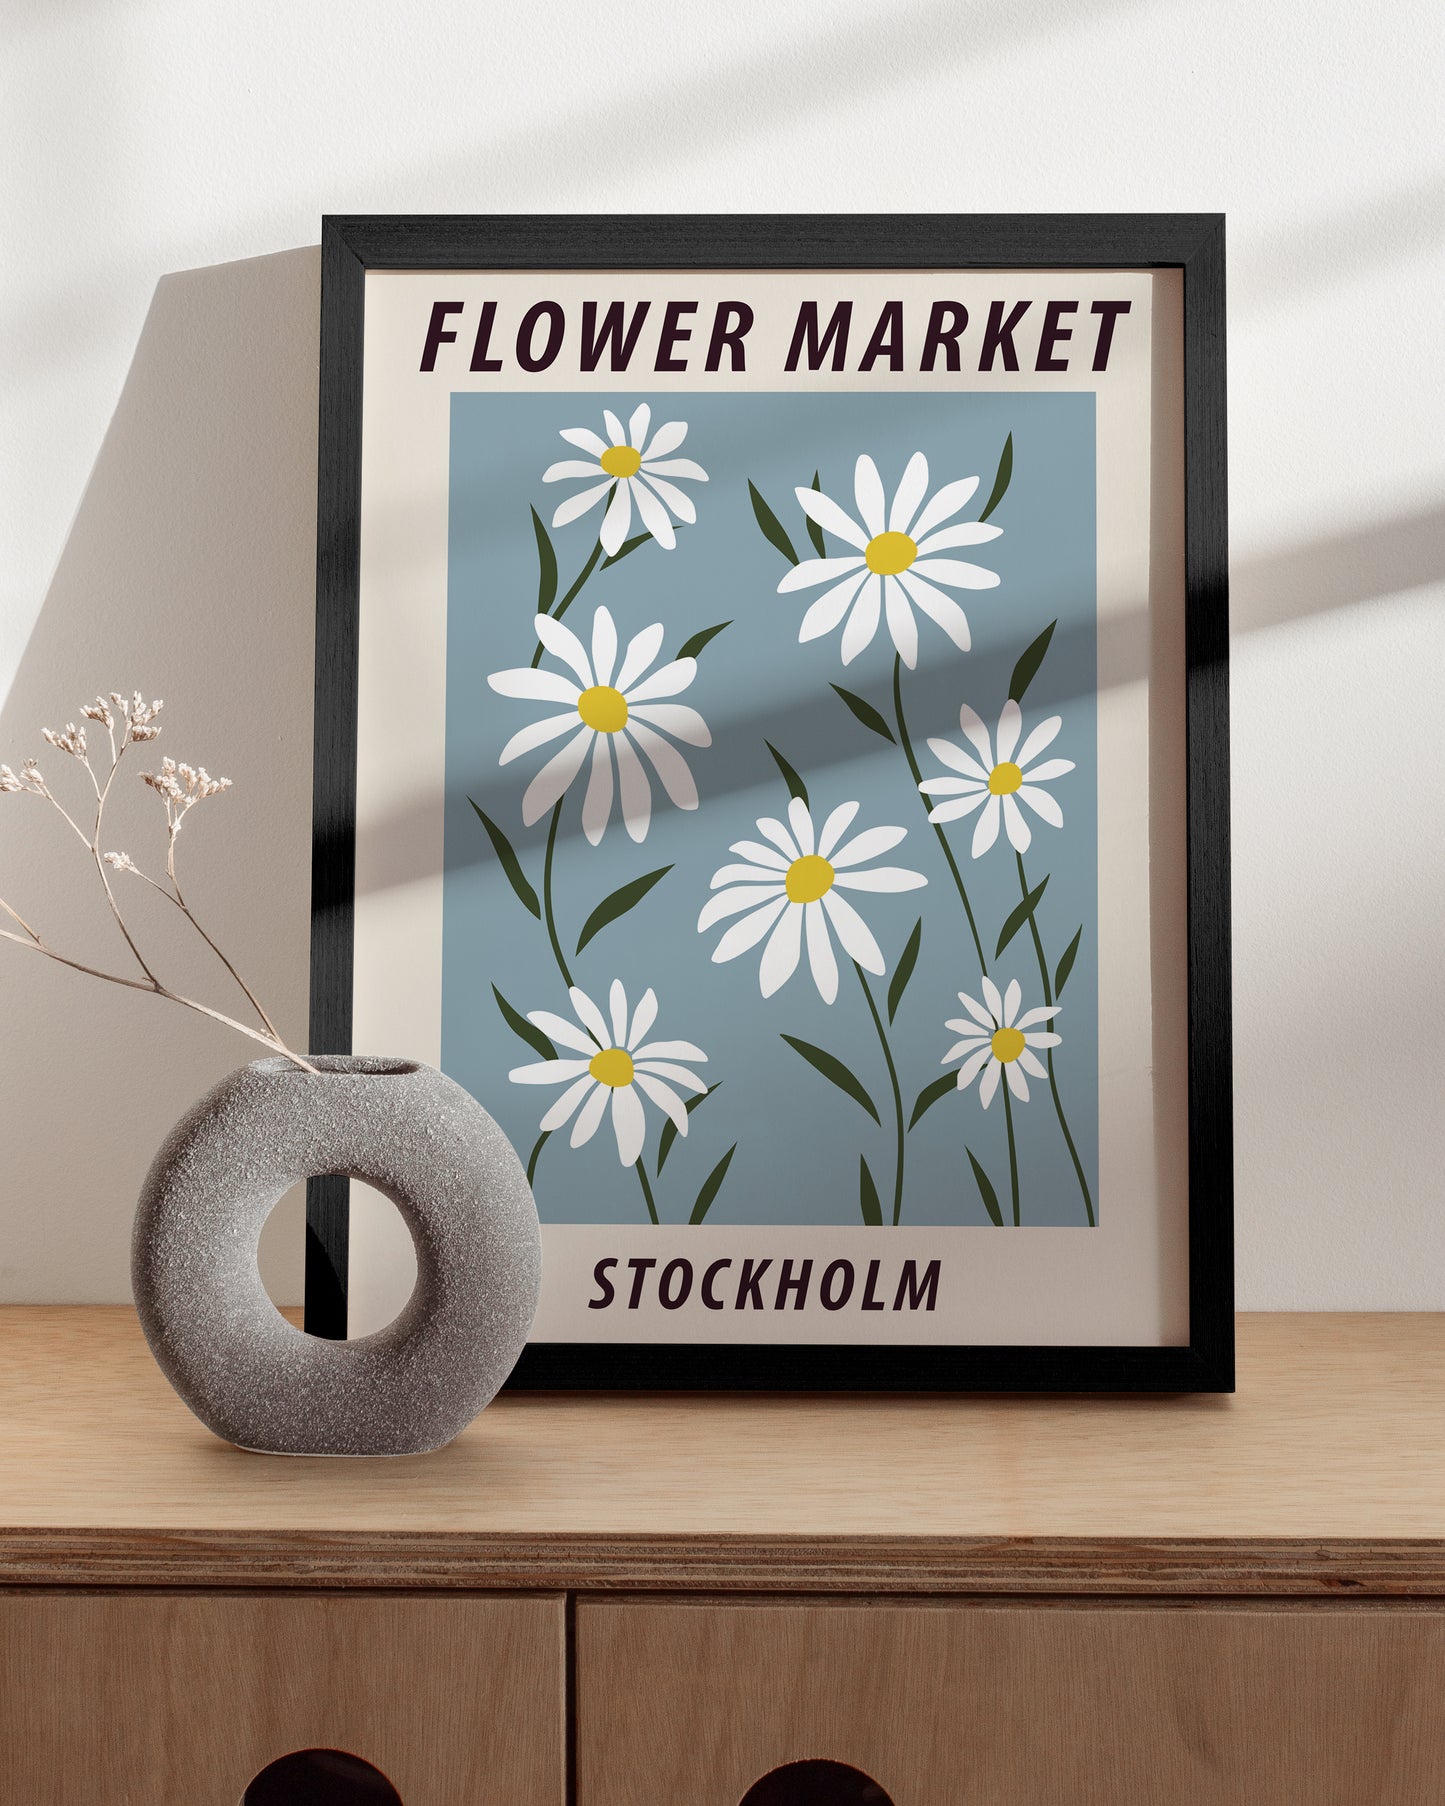 Flower market stockholm